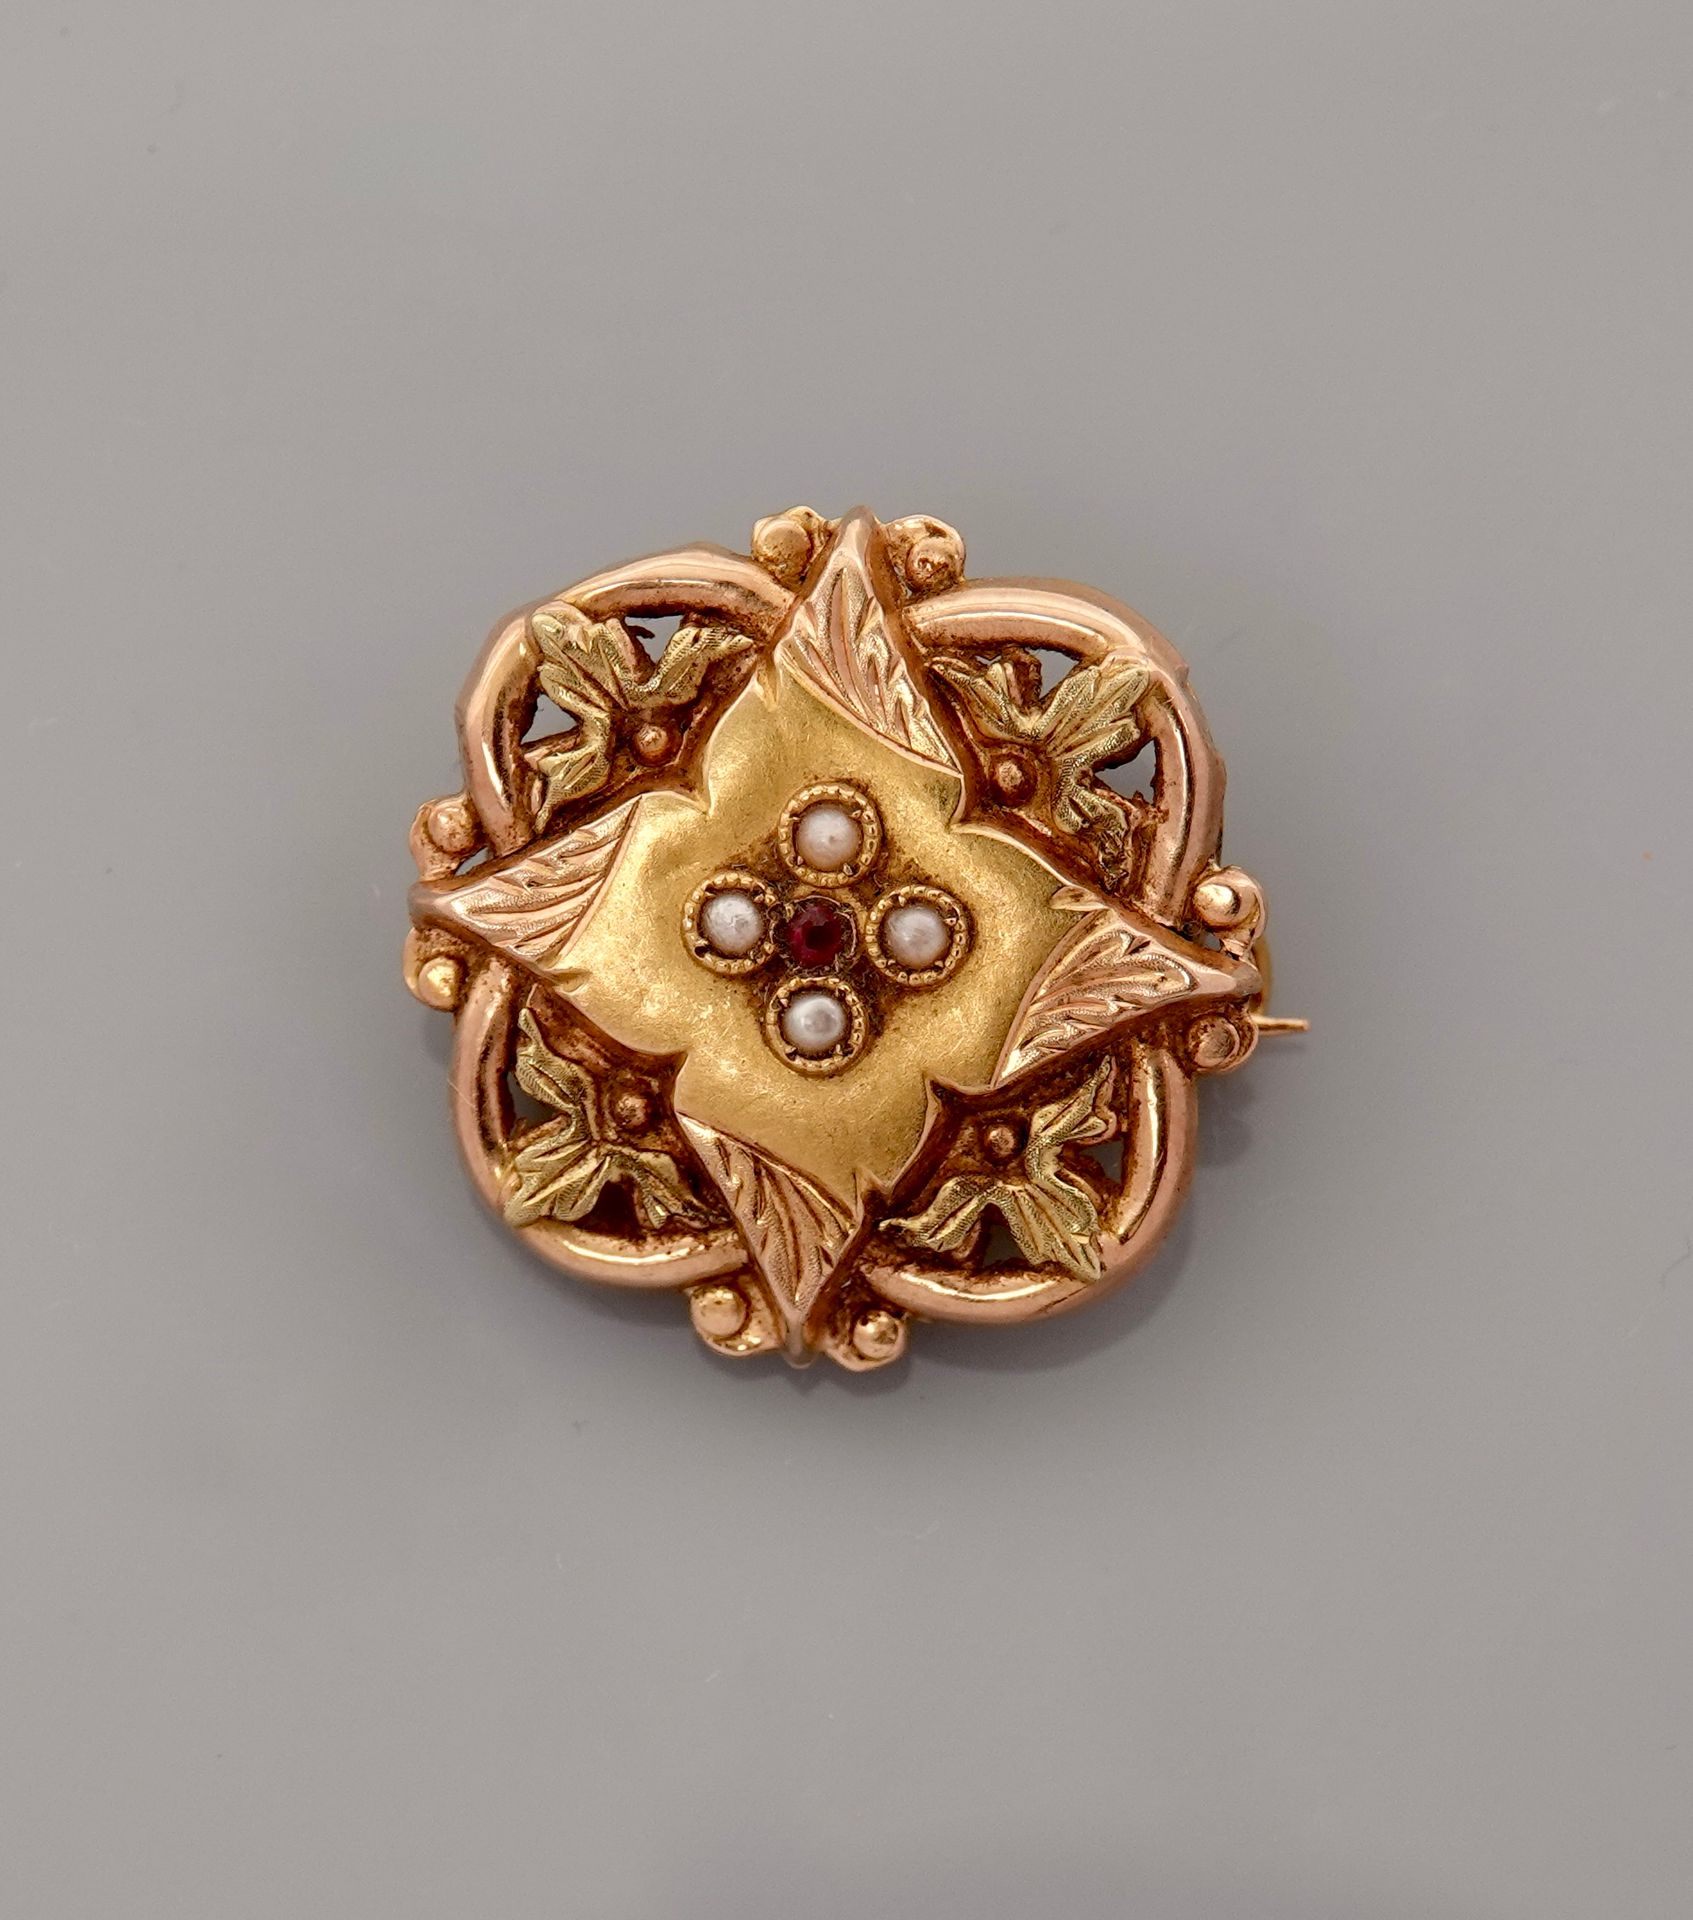 Null 黄金小方形胸针，750毫米，中心有珍珠籽和一颗白宝石，边长22毫米，约1900年，重量：2.3克，毛重。